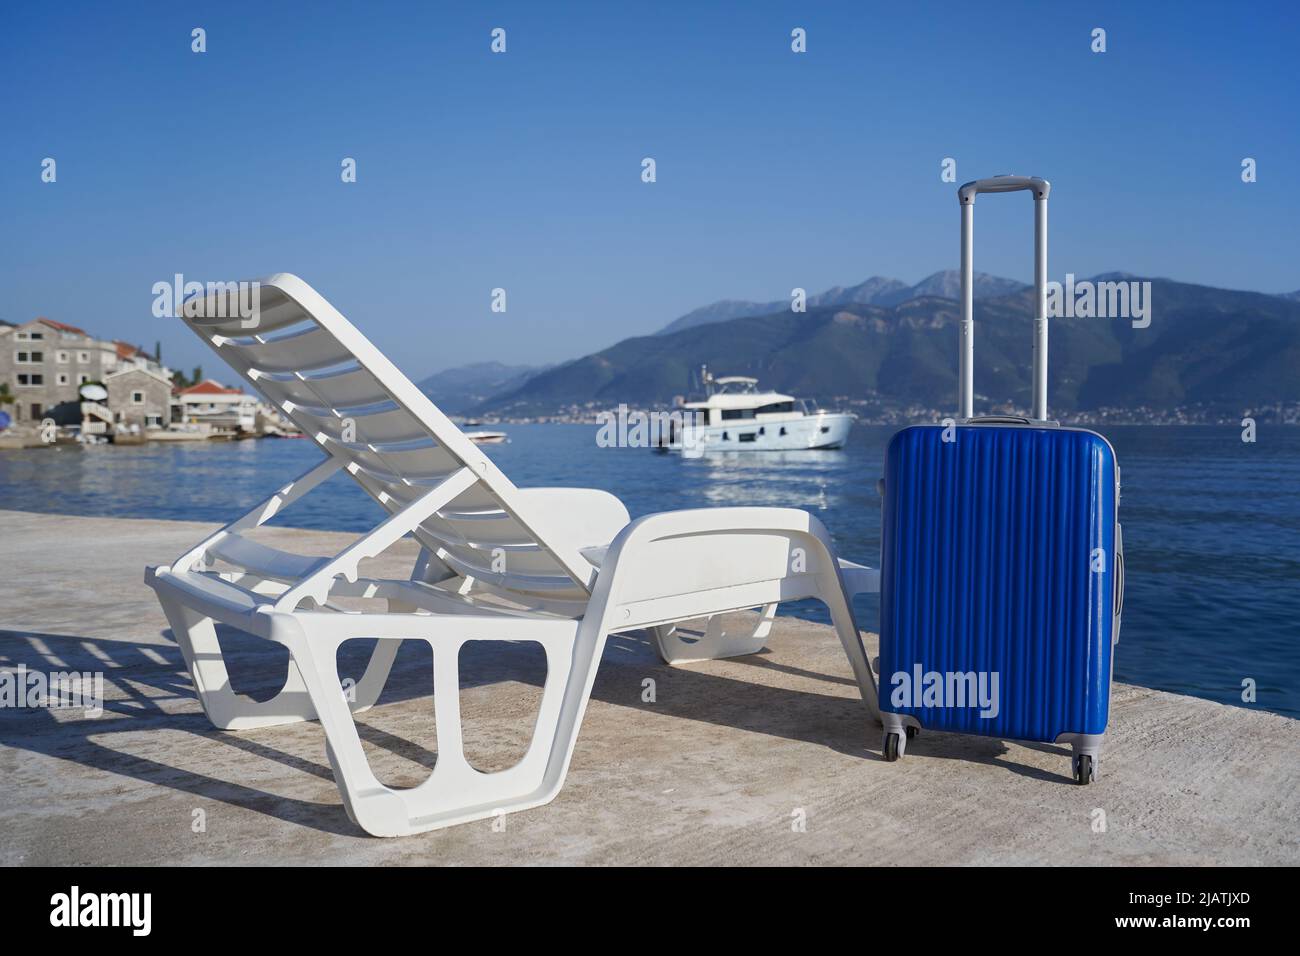 Maleta azul junto a una silla de playa contra el mar y las montañas, concepto de viaje Foto de stock